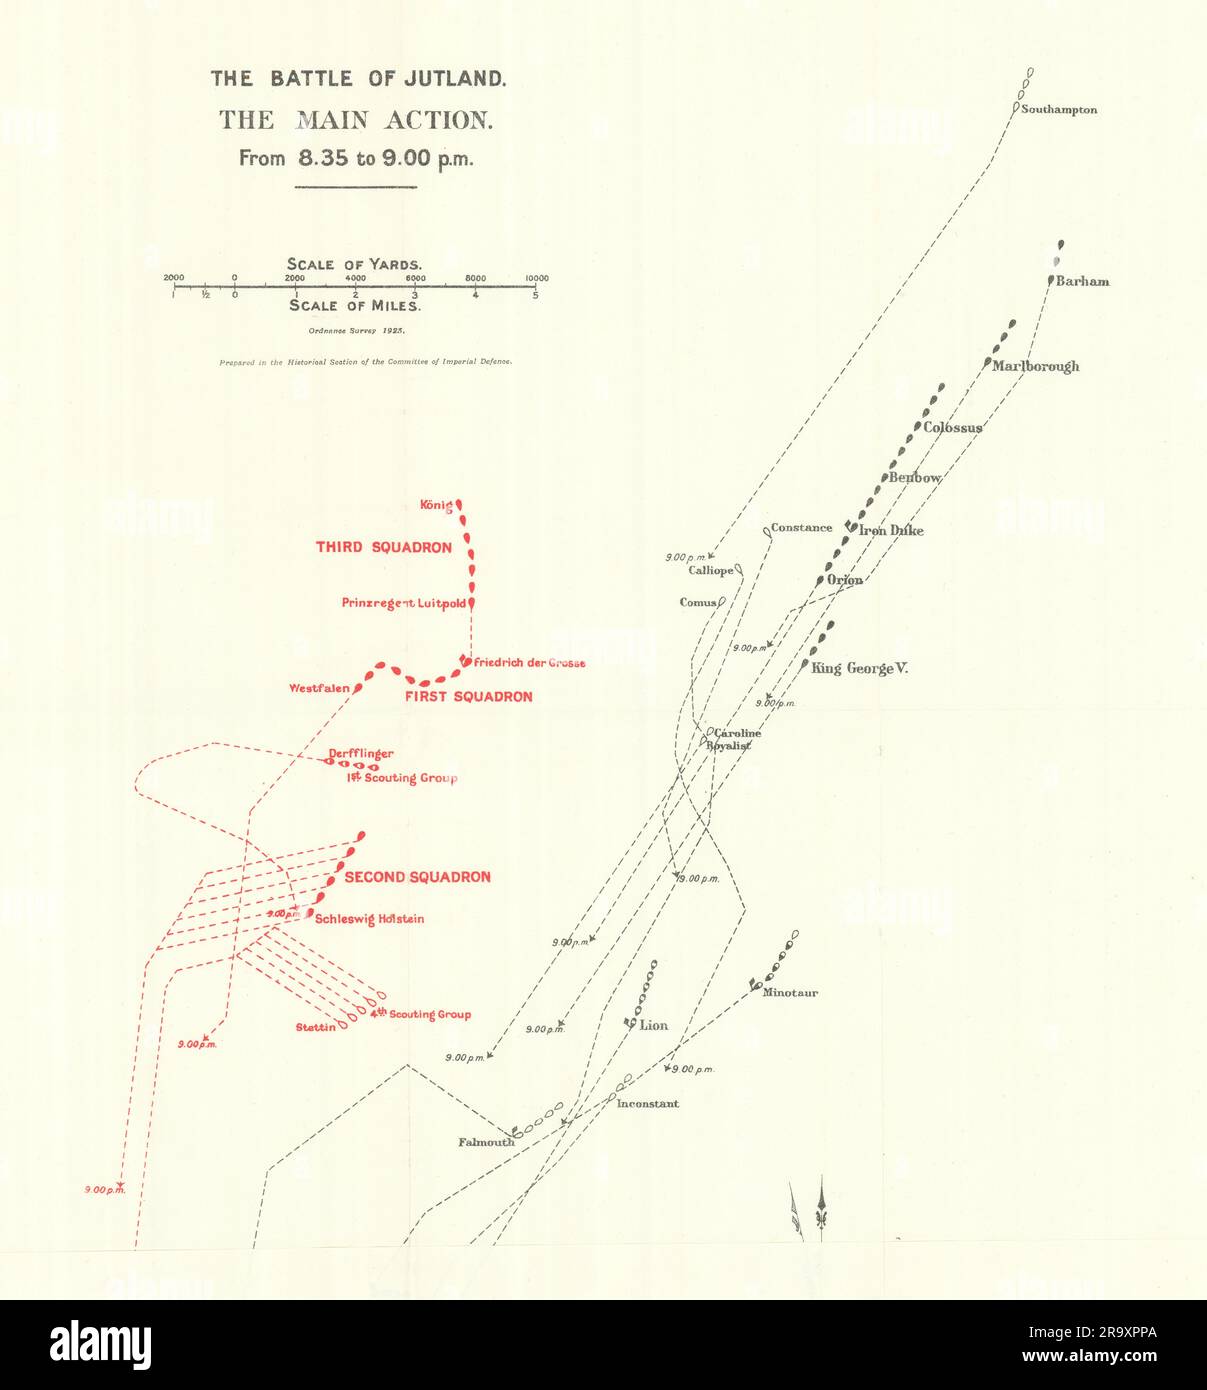 Battaglia dello Jutland. Azione principale. Dalle 8,35 alle 9,00 del 31 maggio 1916. WW1. 1923 vecchia mappa Foto Stock